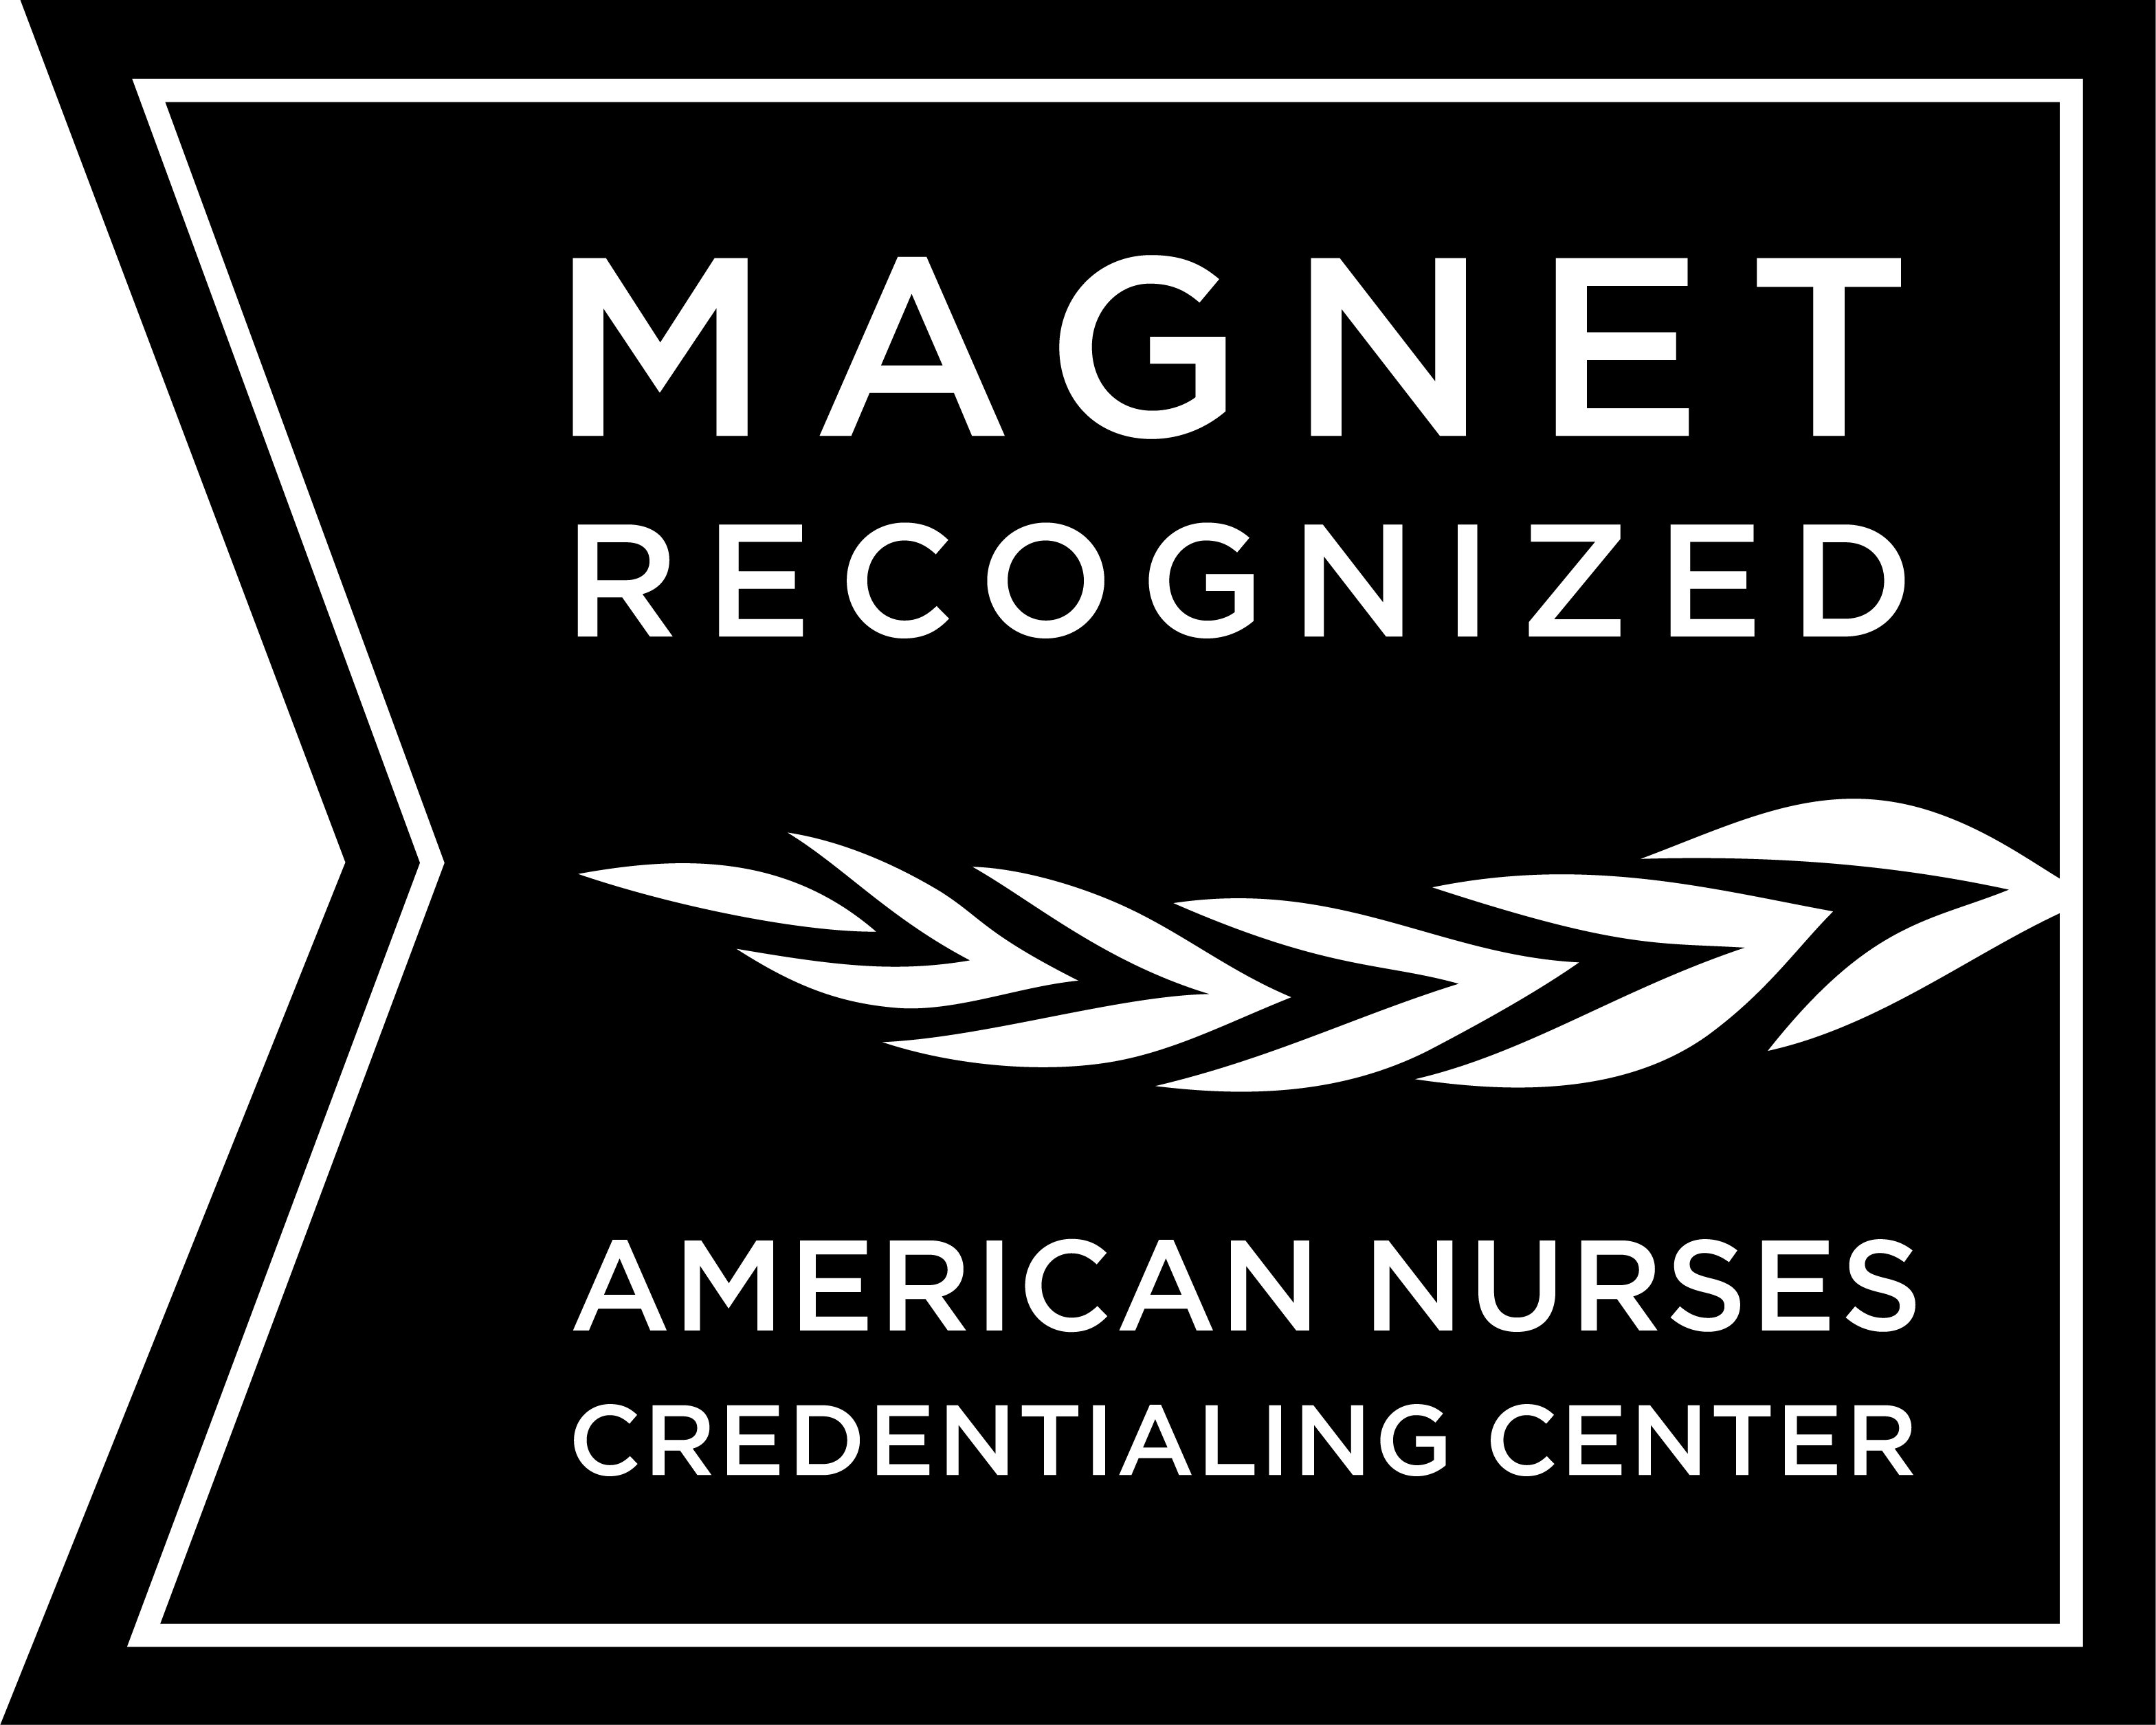 ANCC Magnet Status logo